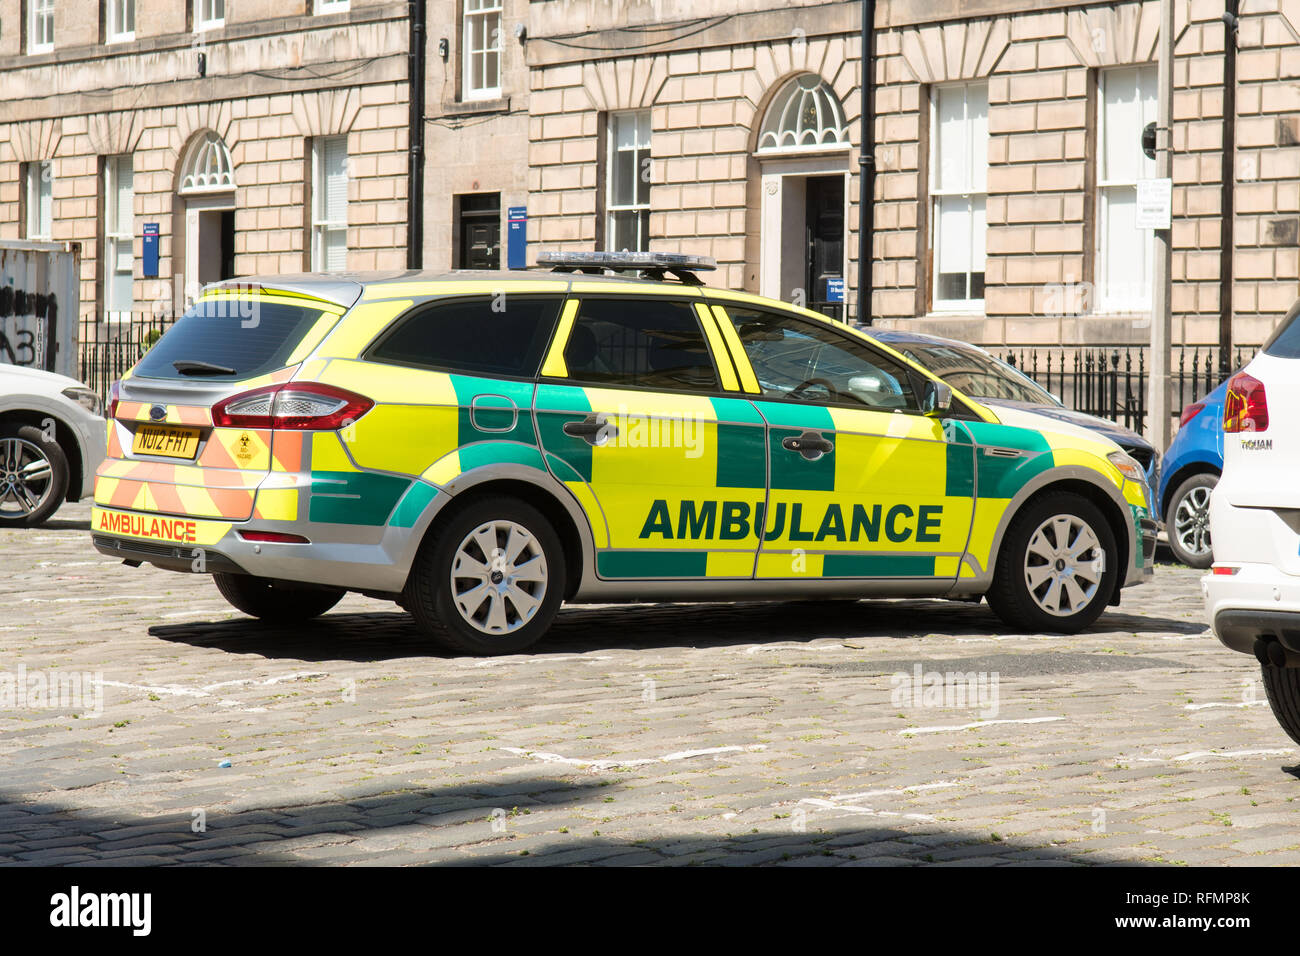 Scottish Ambulance Service Auto Fahrzeug in Edinburgh, Schottland, Großbritannien Stockfoto